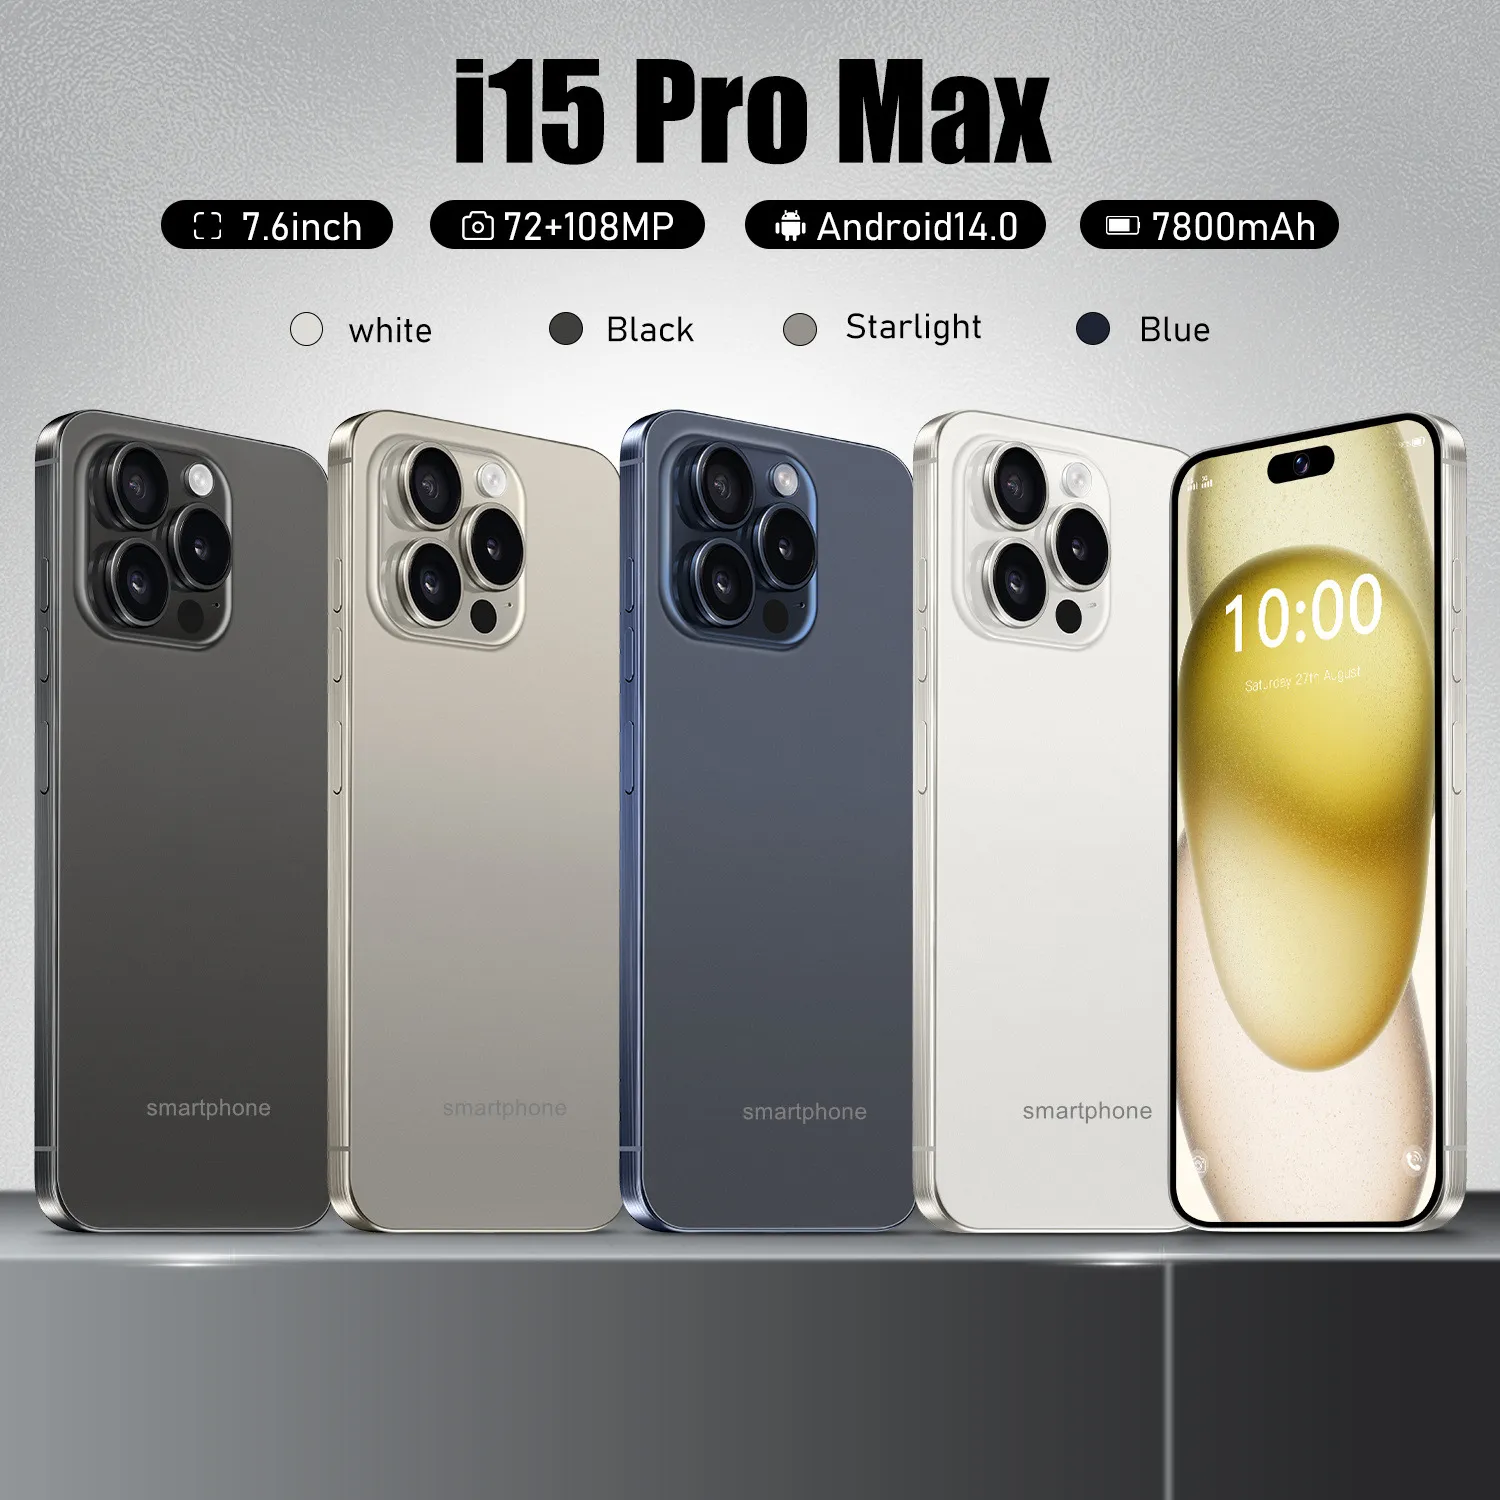 15 Pro Max Show 5G Mobilephone 64GB ROM CellPhone 6.8 polegadas Câmera protetora Bluetooth wifi wcdma MobiePhone com caixa